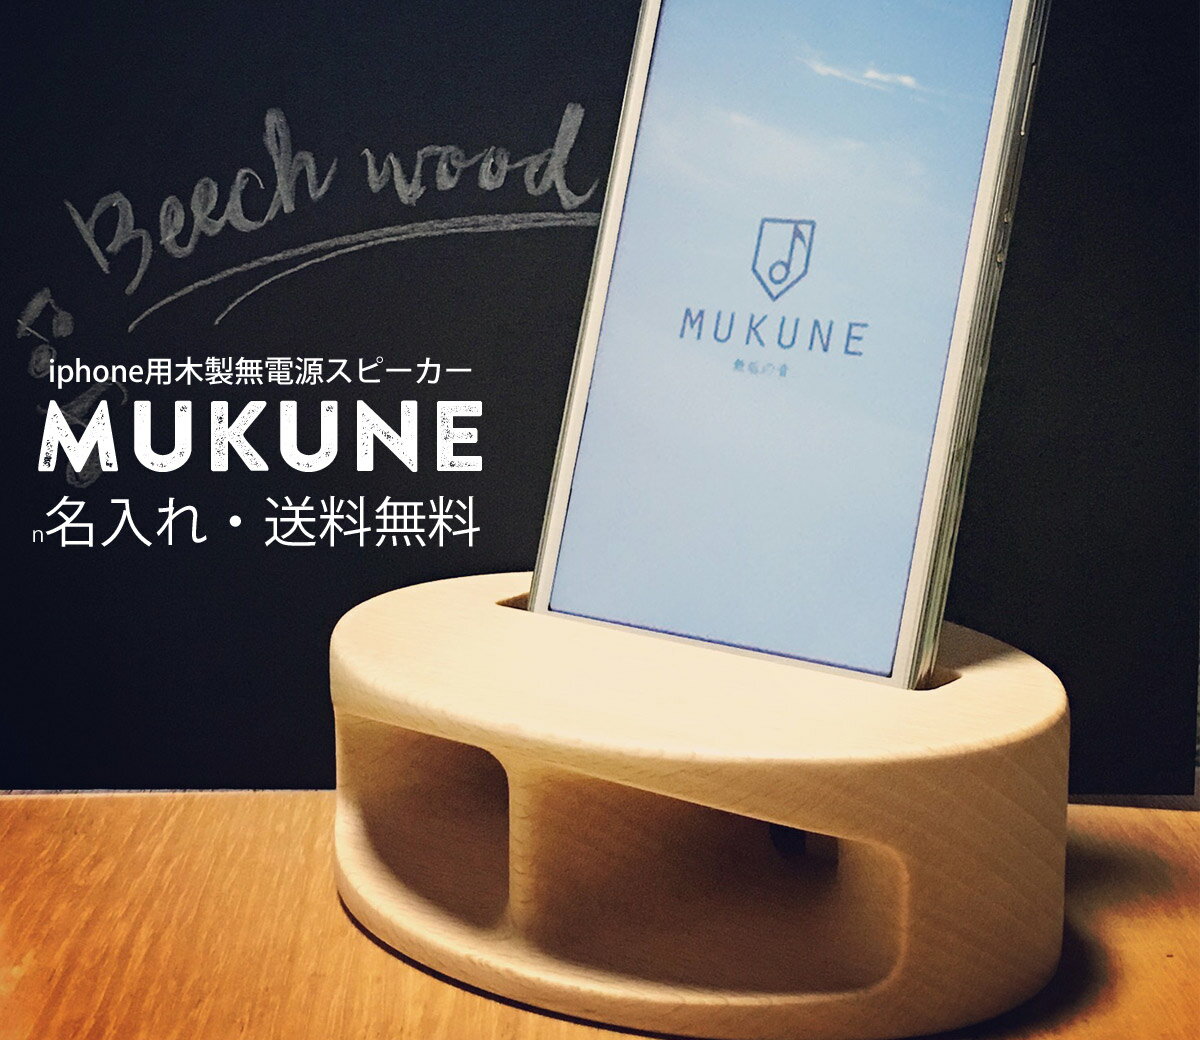 【名入れ】iPhone用木製無電源スピーカー「MUKUNE」ポータブルスピーカー 誕生日プレゼント ホワイトデープレゼント 父の日 母の日 木製（ヤマザクラ）